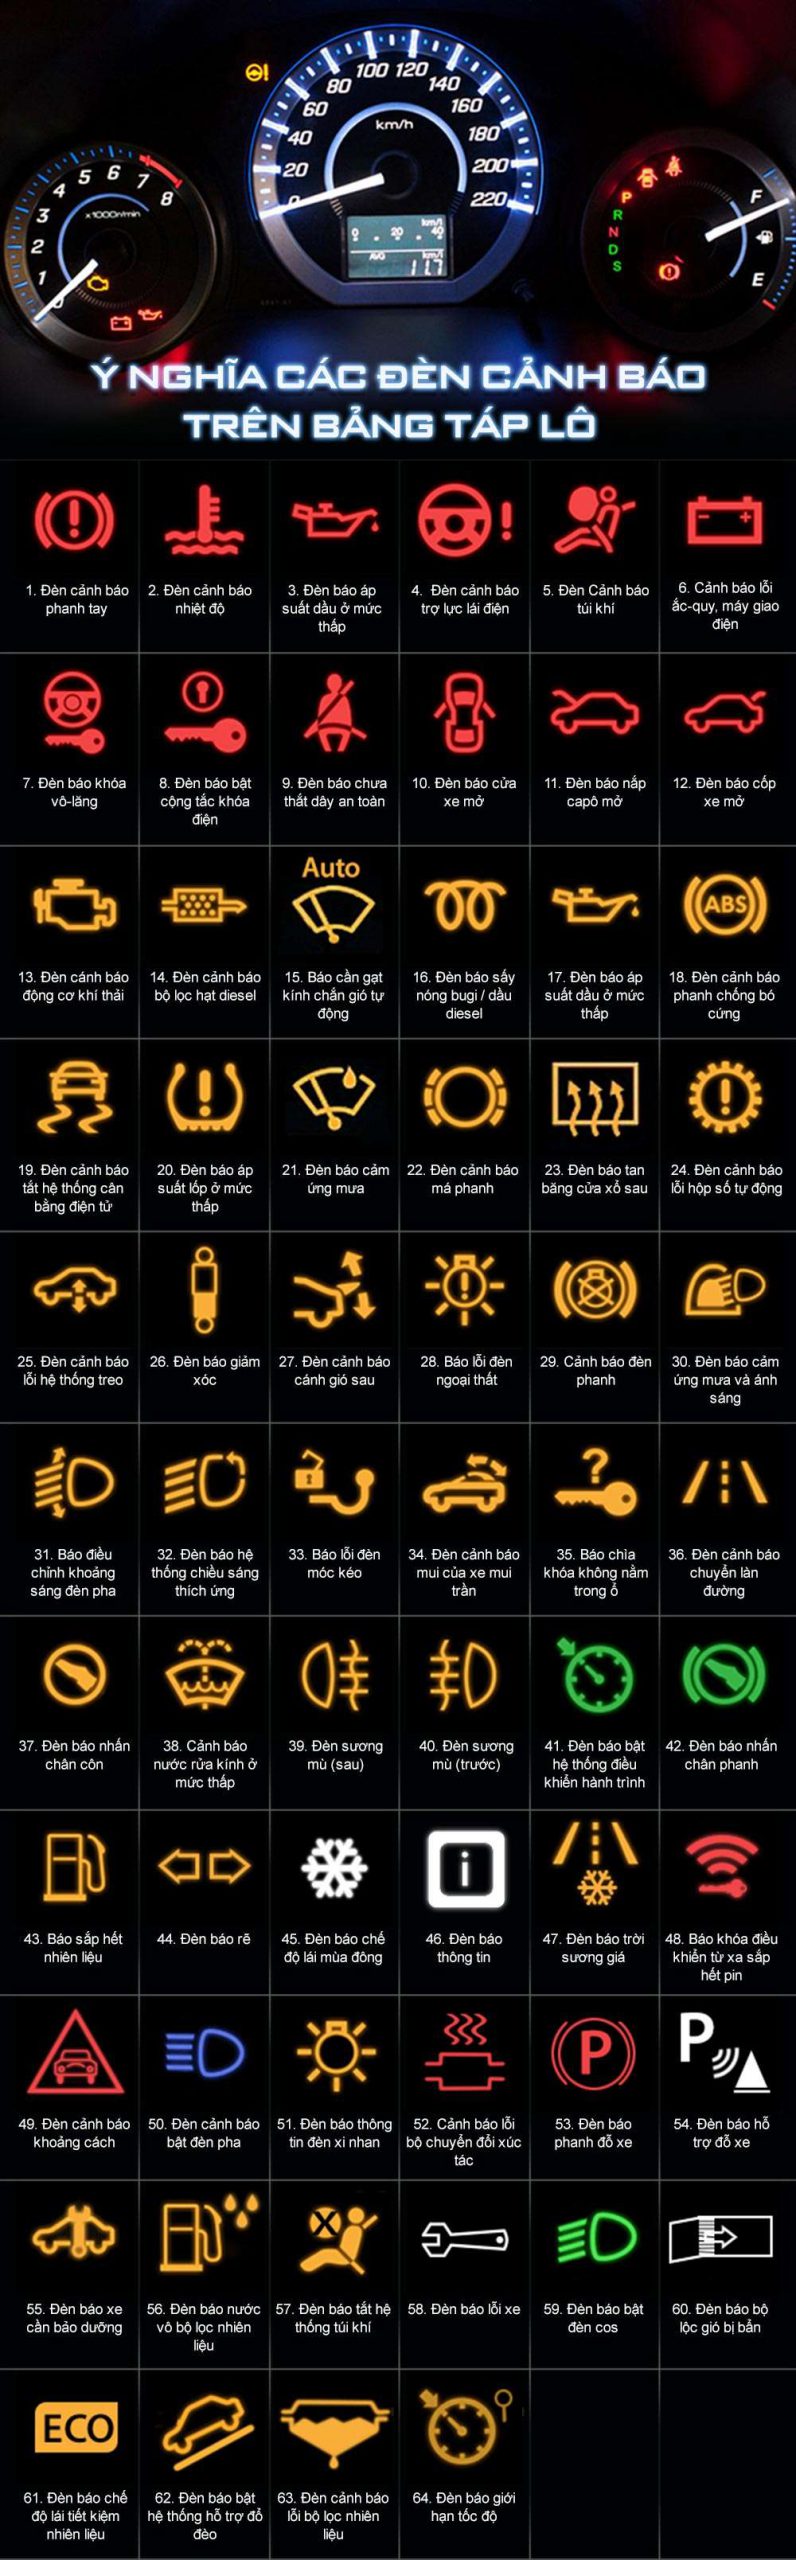 Ý nghĩa các đèn ảnh báo trên bảng táp lô ô tô